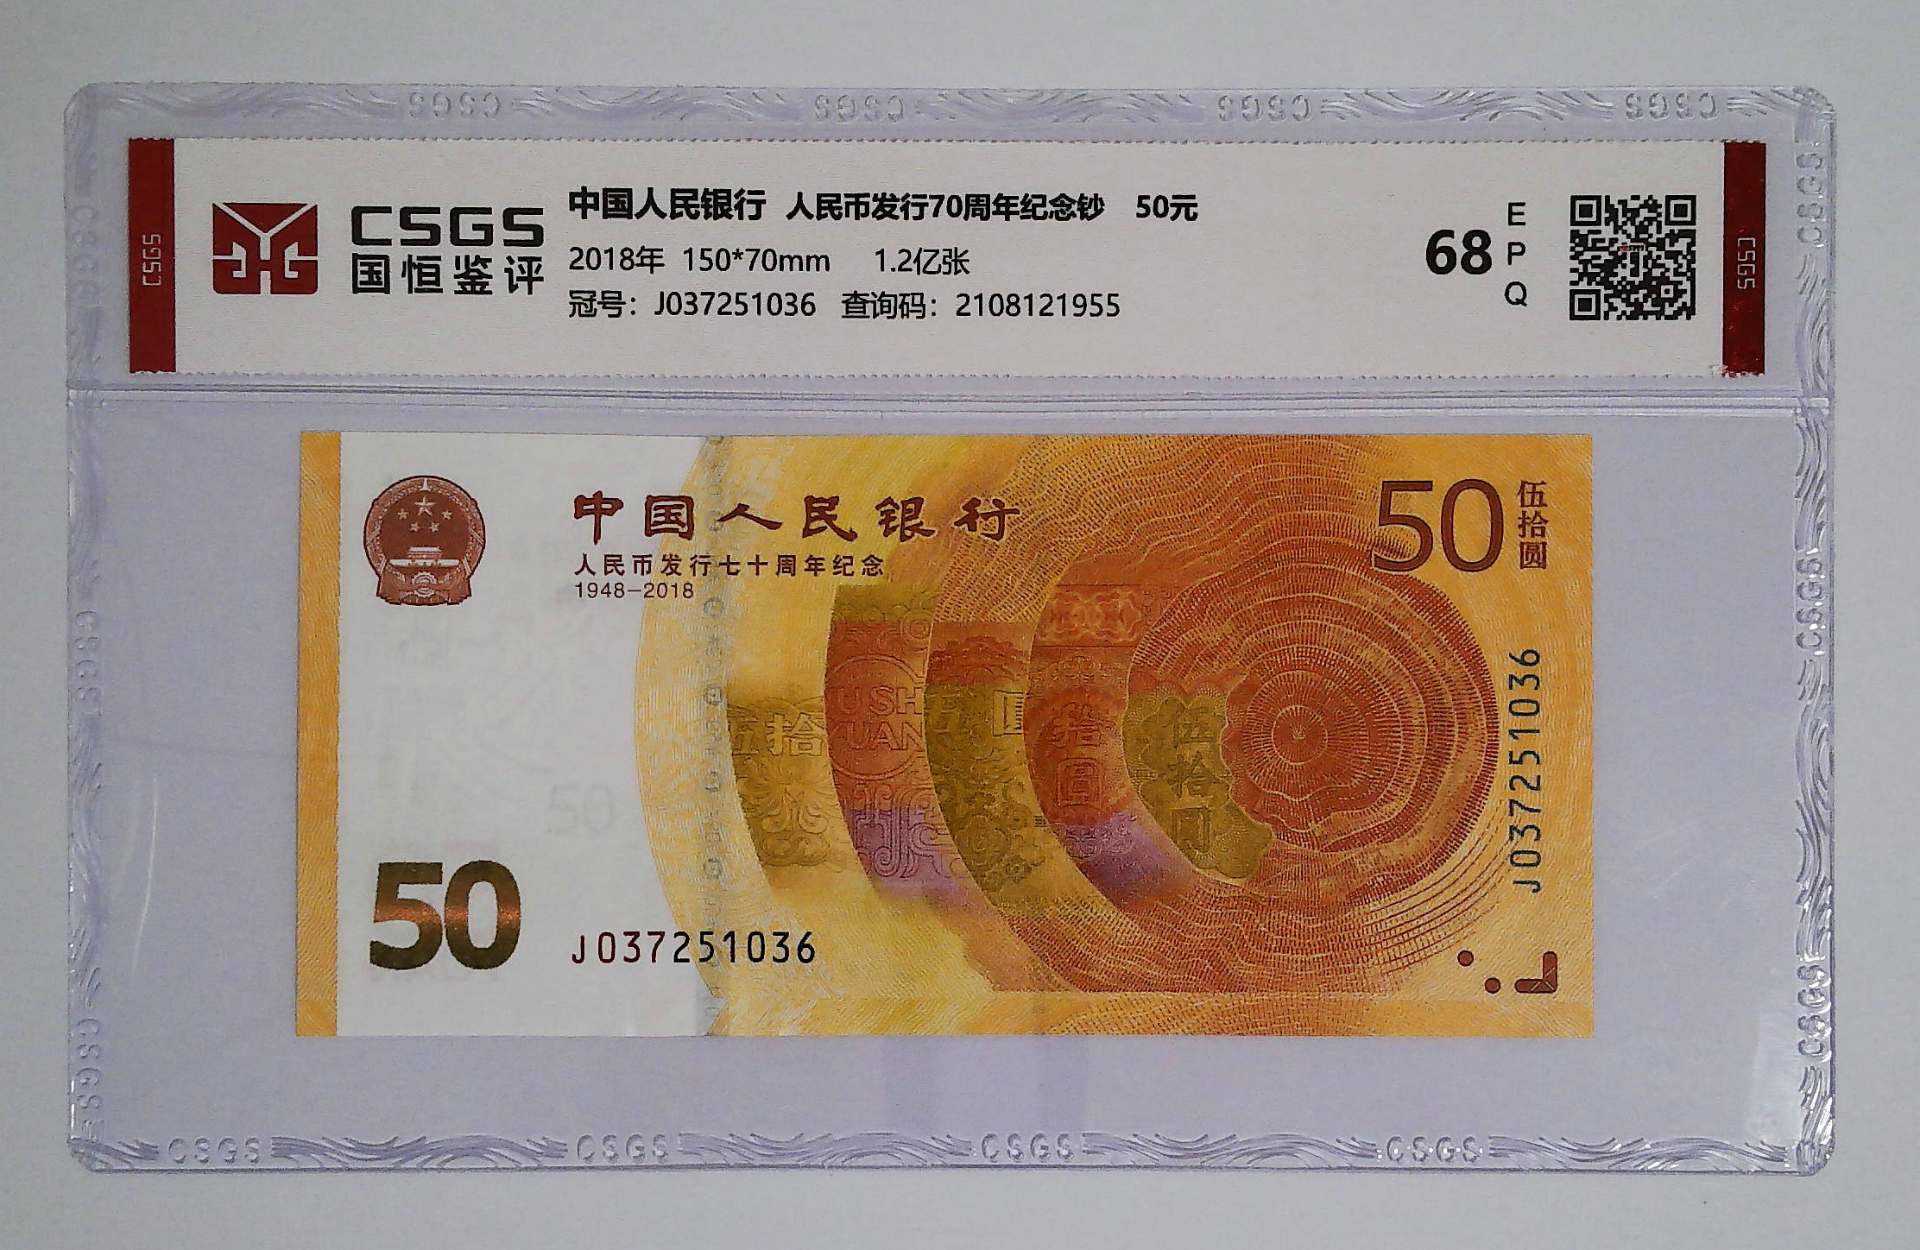 人民币发行70周年纪念钞